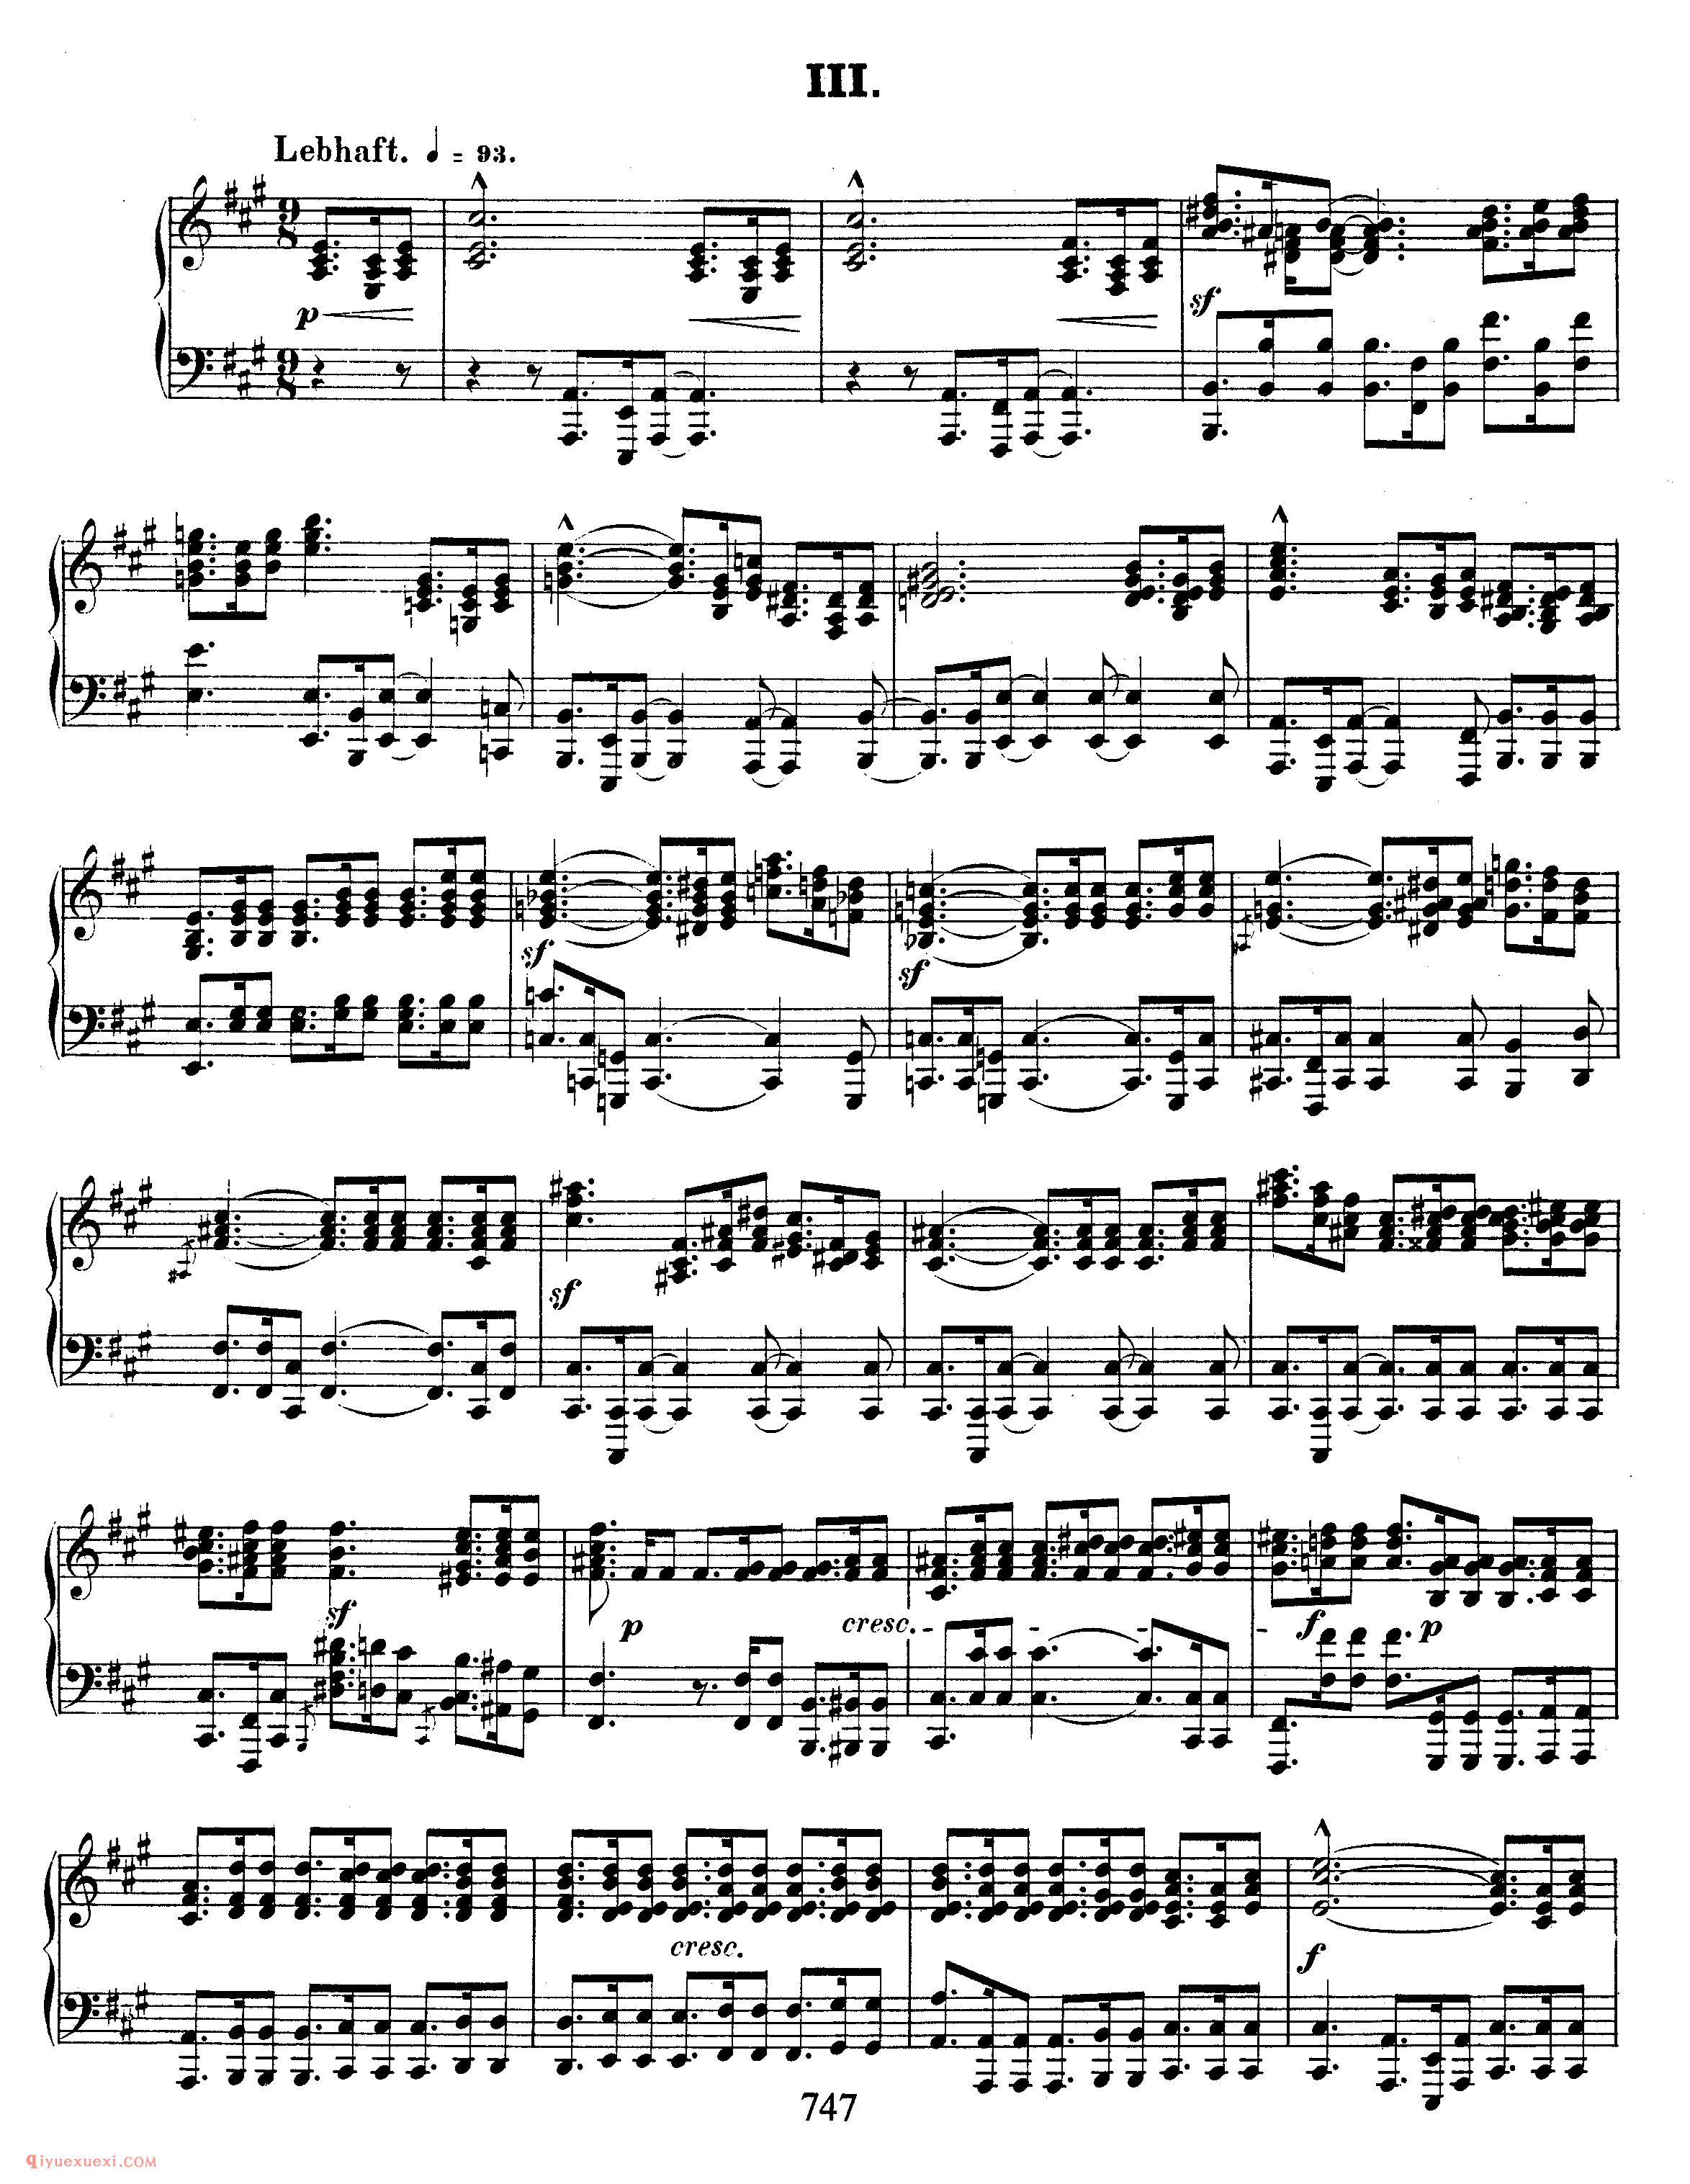 舒曼《拂晓之歌》作品133_Schumann Gesange der Fruhe Op.133_舒曼钢琴谱